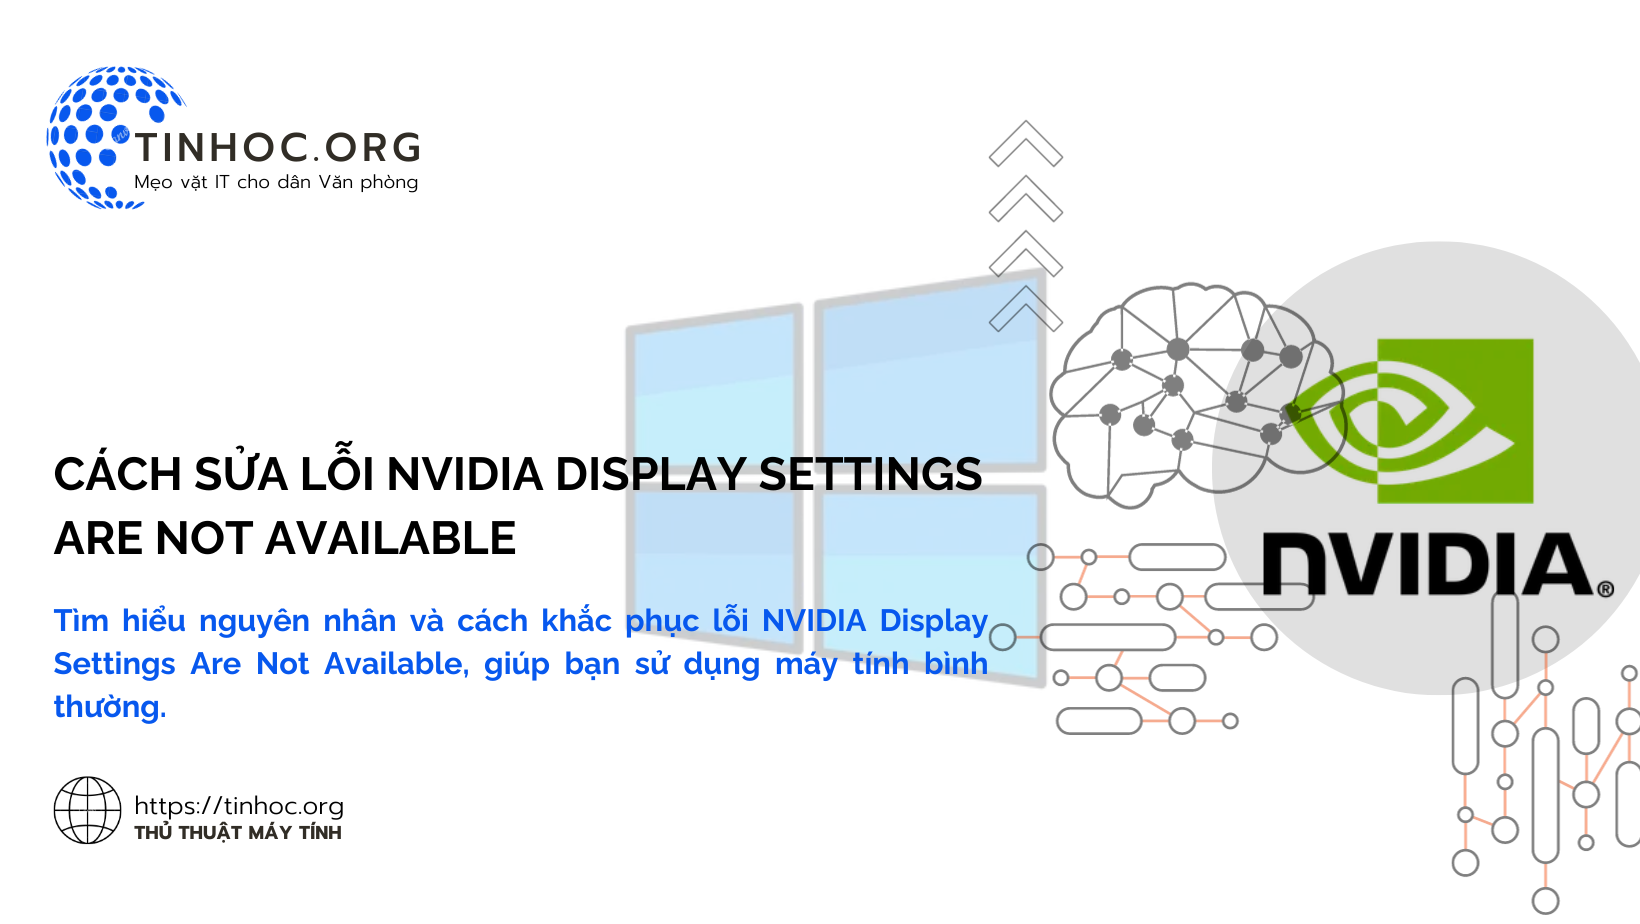 Tìm hiểu nguyên nhân và cách khắc phục lỗi NVIDIA Display Settings Are Not Available, giúp bạn sử dụng máy tính bình thường.